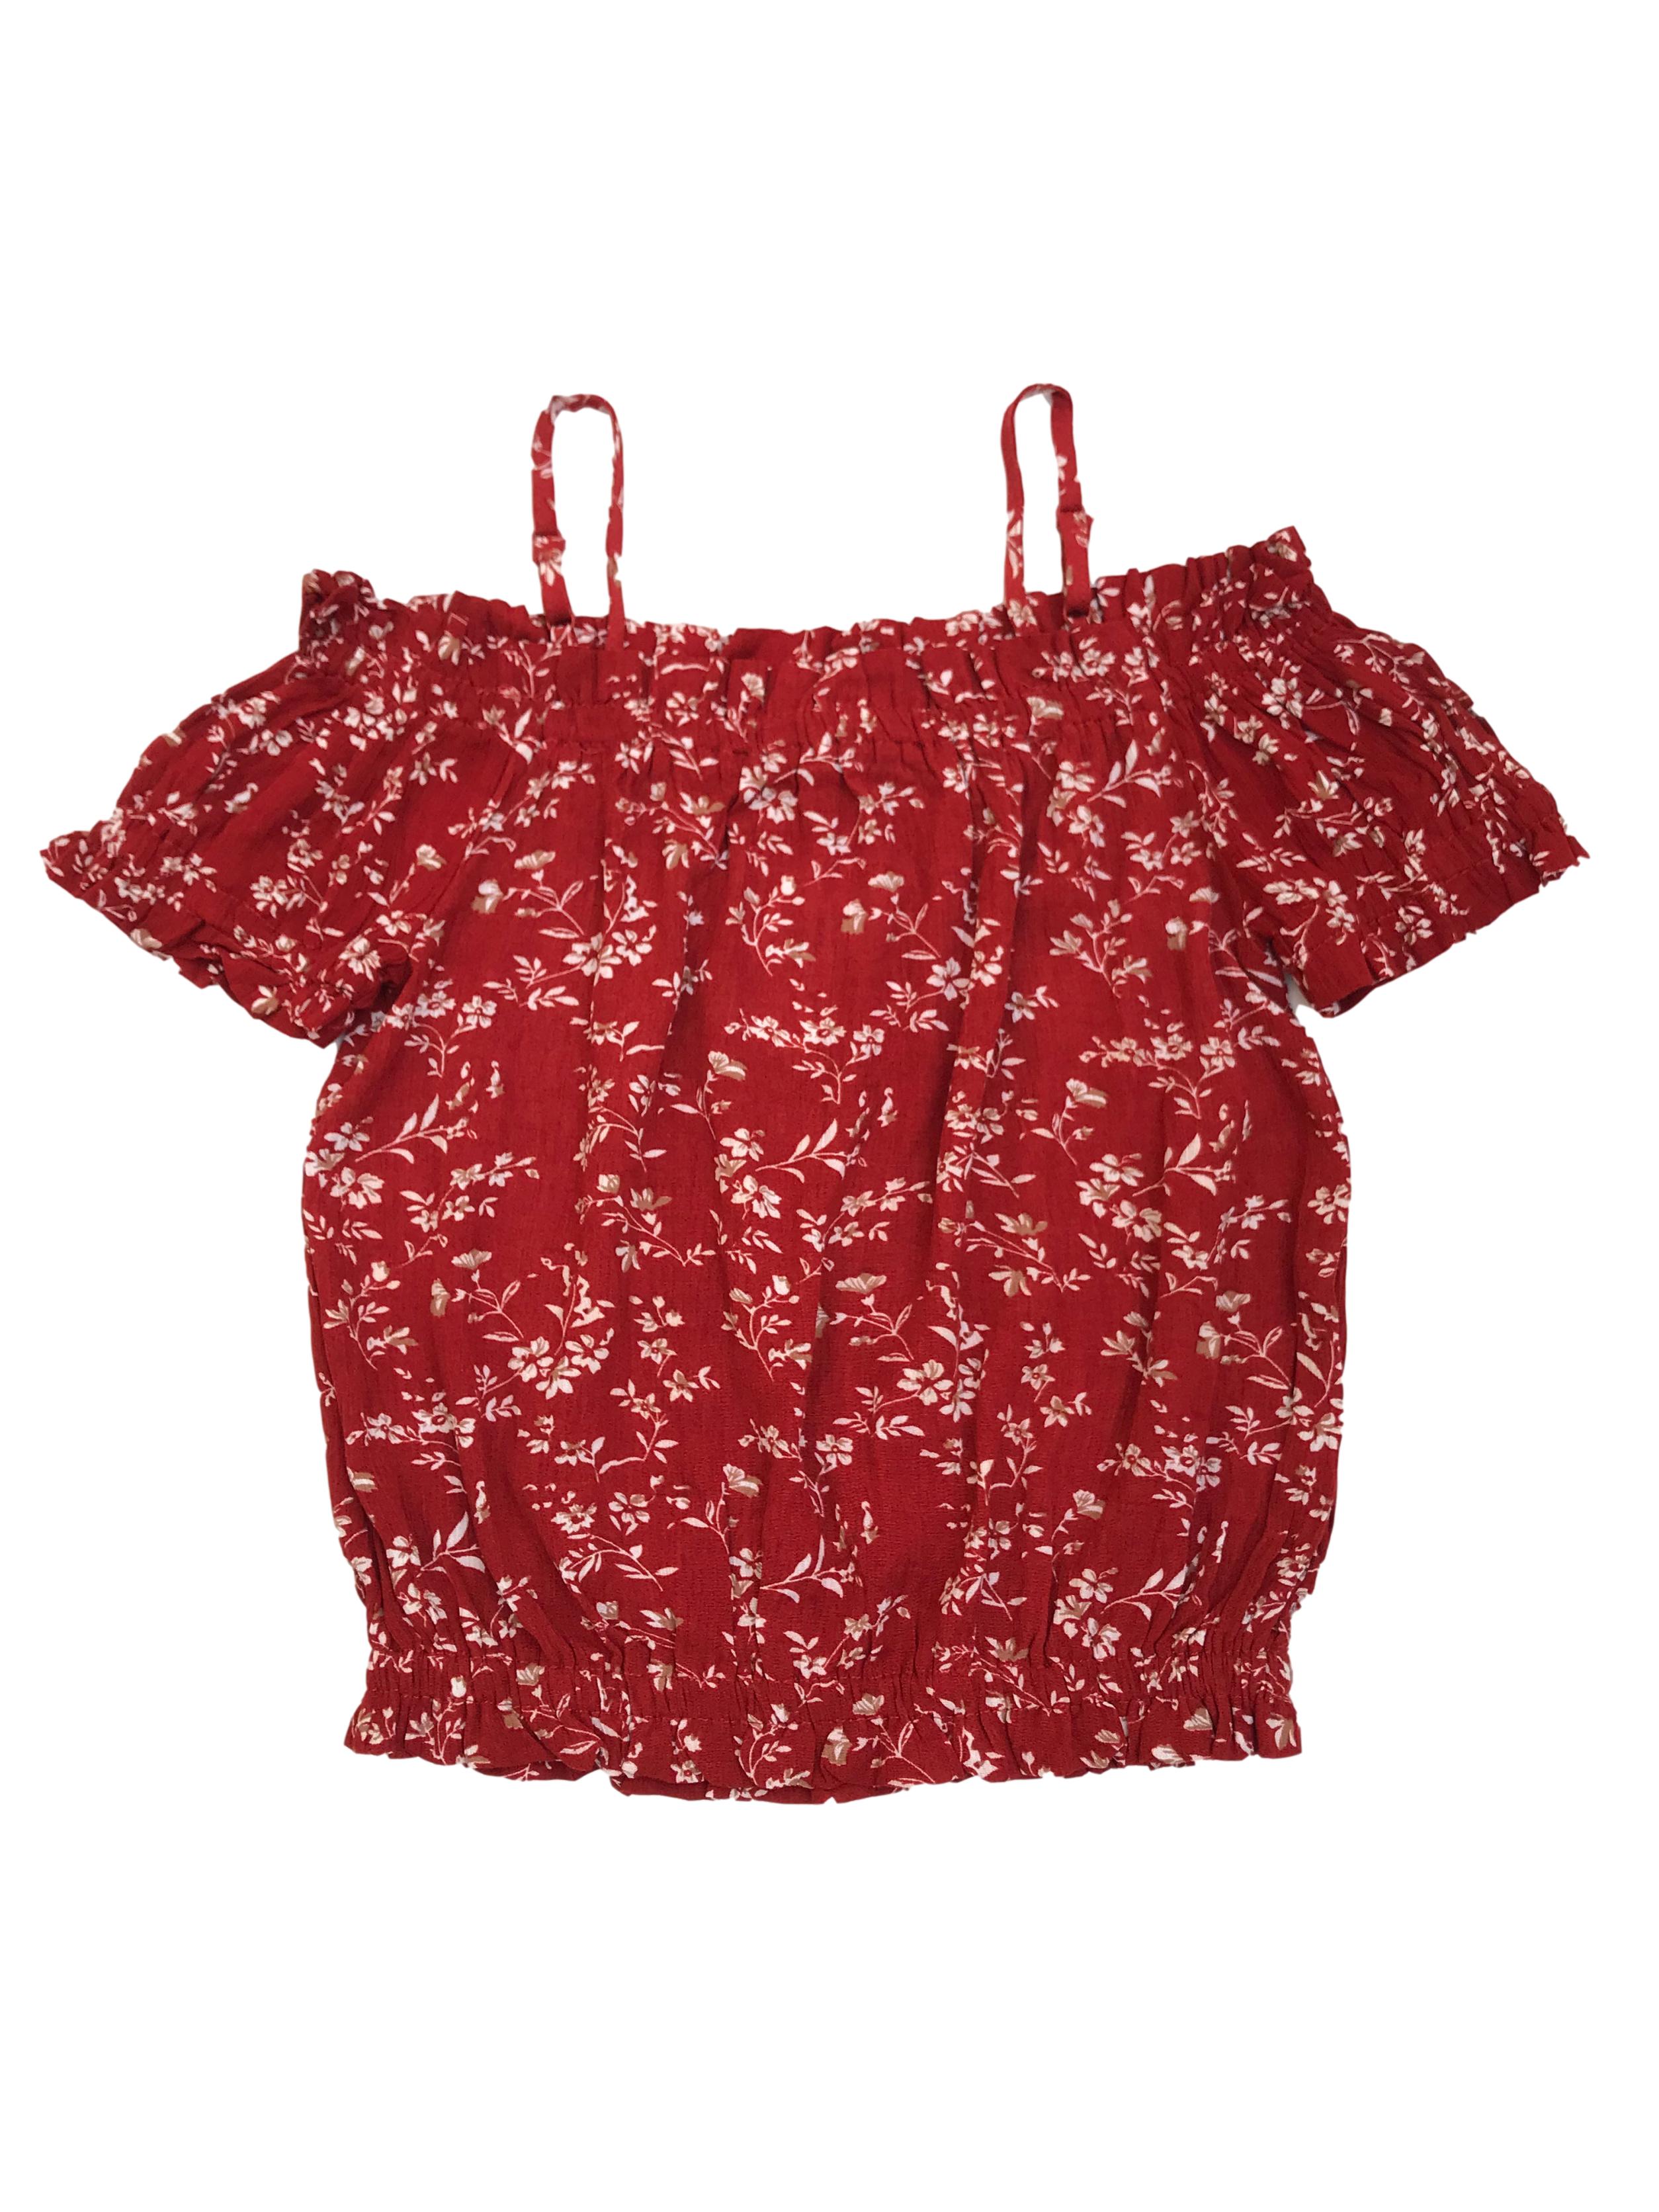 Blusa corta Papermoon de rayón ladrillo con print de flores, off shoulder con tiras en los hombros y elástico en mangas y basta. Nueva